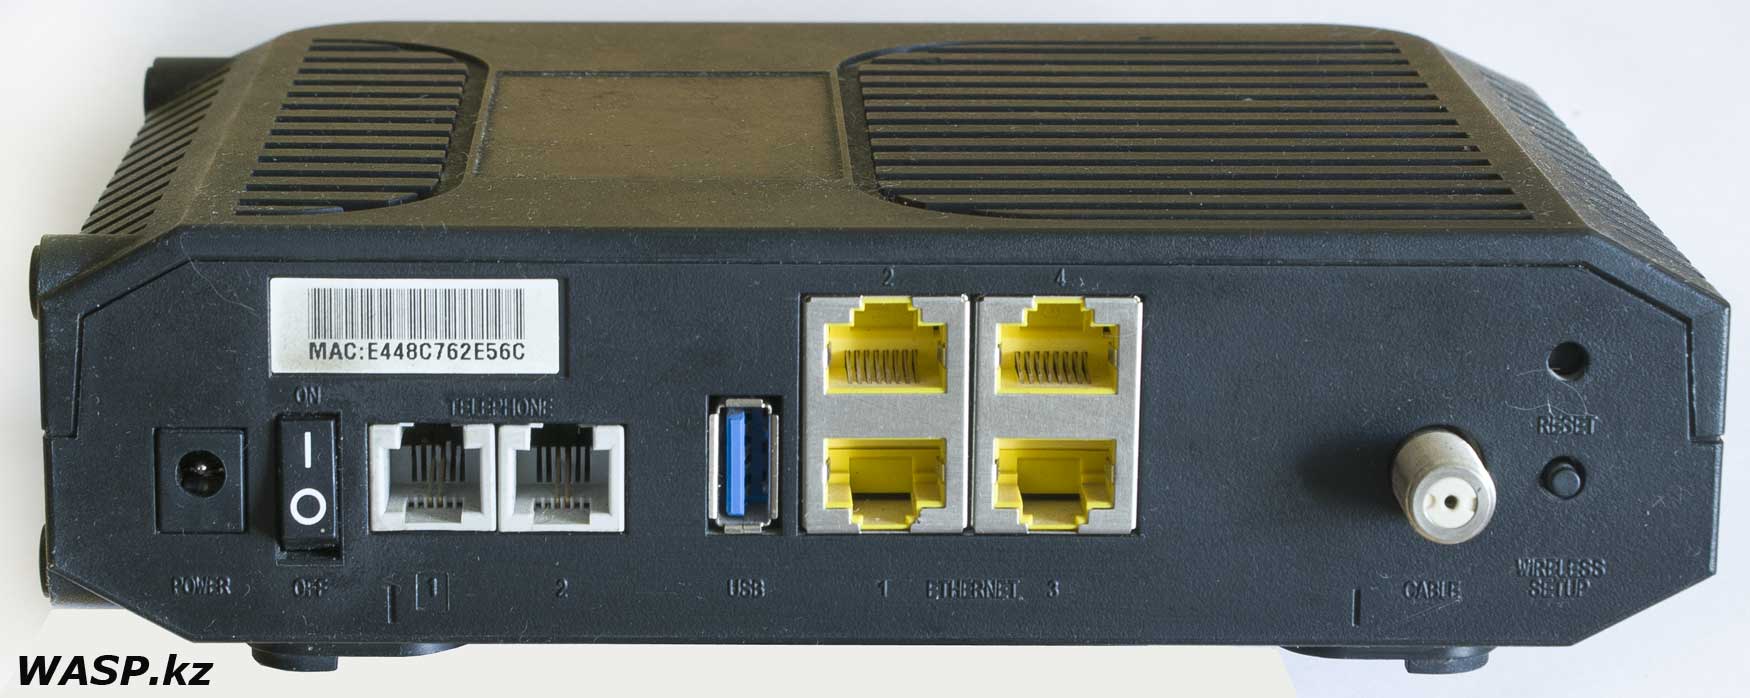 Cisco EPC3925 задняя сторона все разъемы и элементы